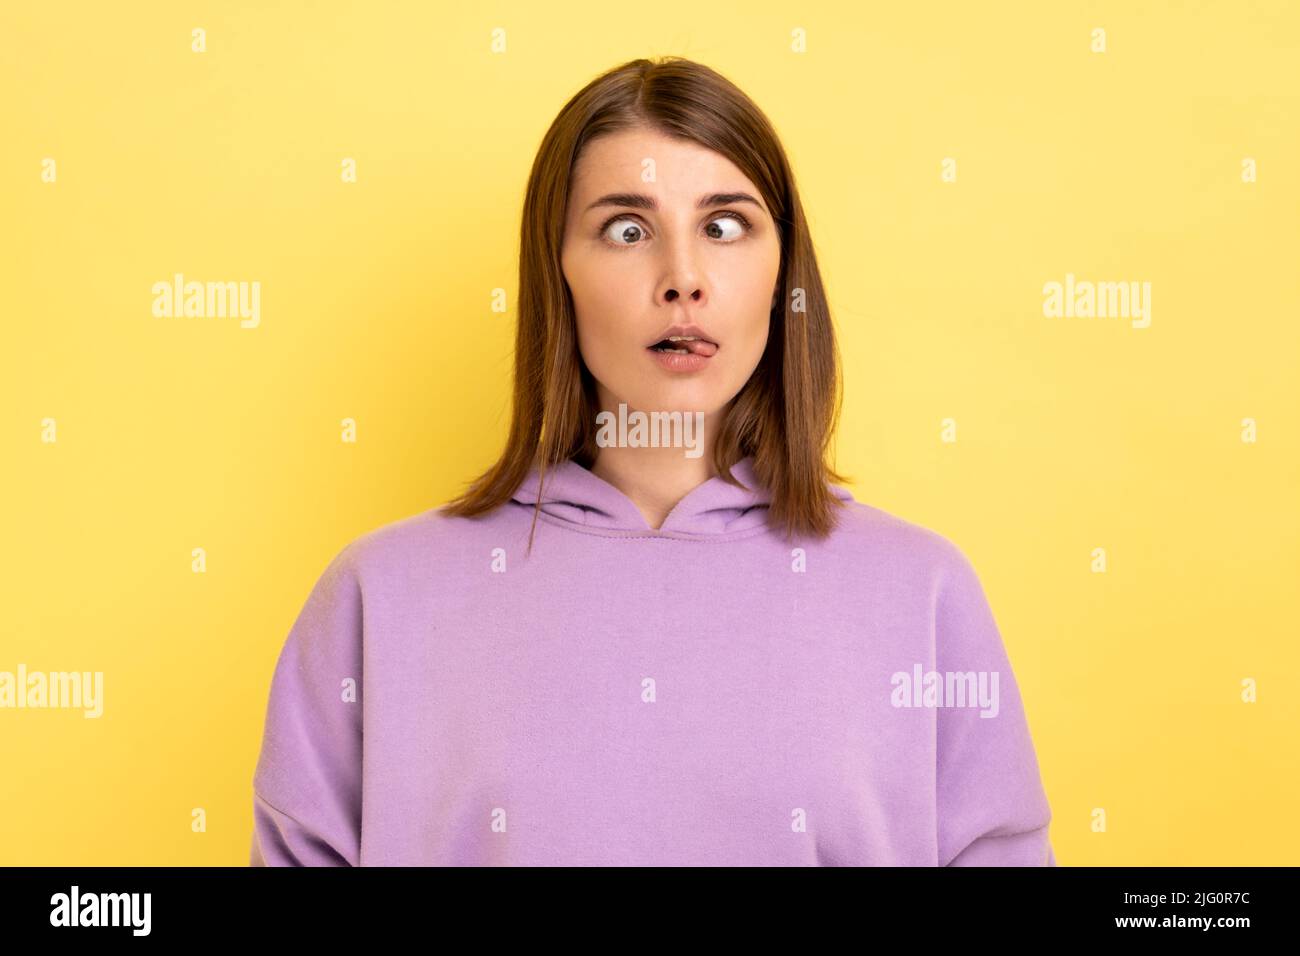 Ritratto di giovane donna adulta stolita con capelli in piedi con occhi incrociati e lingua fuori, comportamento infantile, indossando felpa con cappuccio viola. Studio interno girato isolato su sfondo giallo. Foto Stock